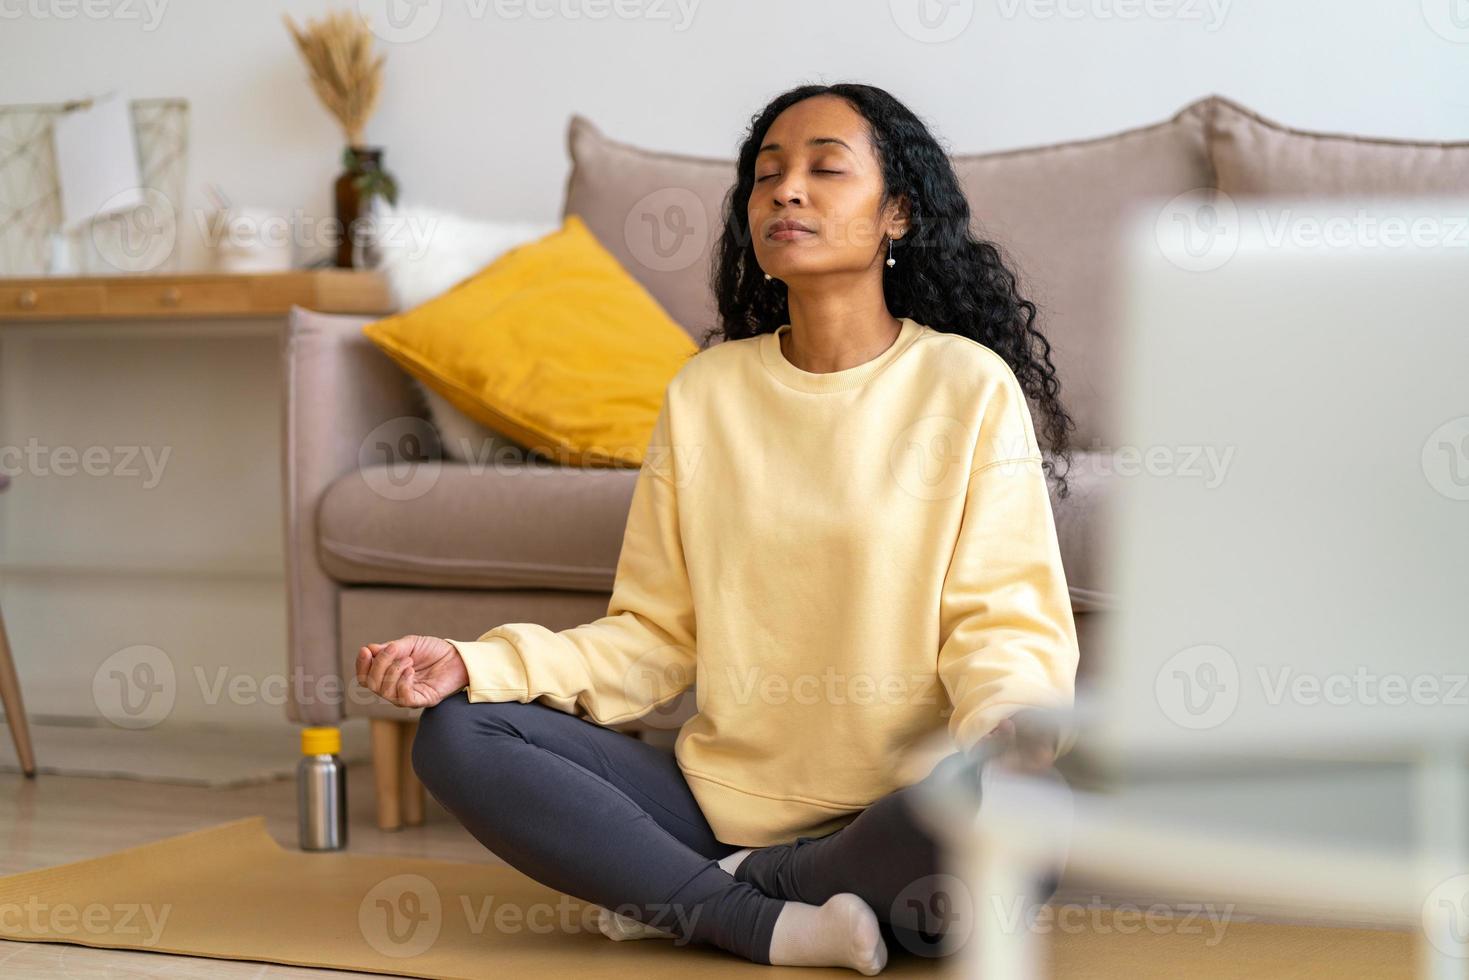 junge afroamerikanische frau, die in lotushaltung auf matte im wohnzimmer sitzt, während sie meditiert foto